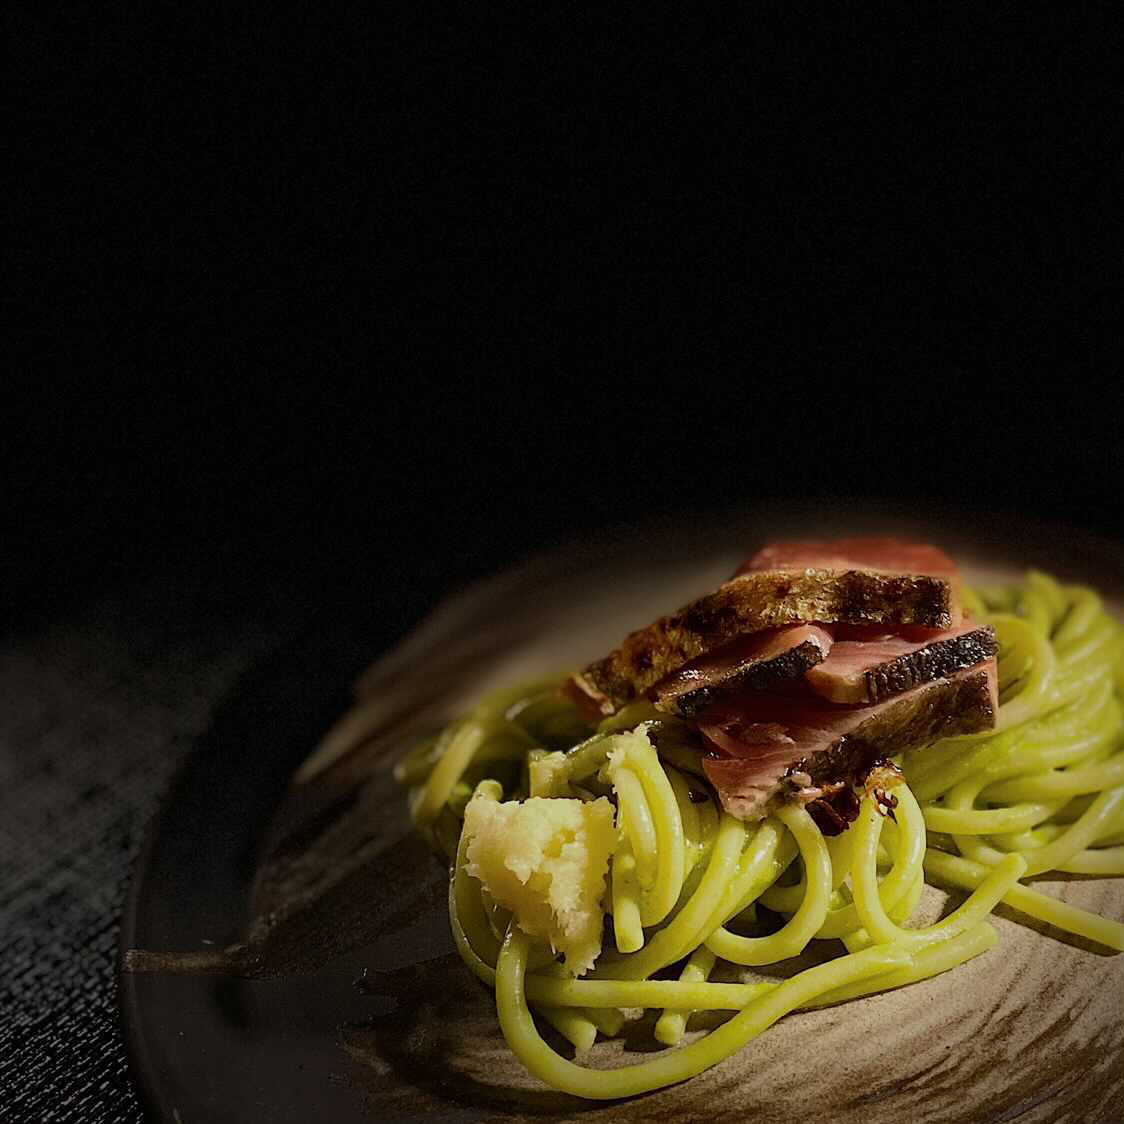 Pesto spaghetti with bonito from Corridor 109.